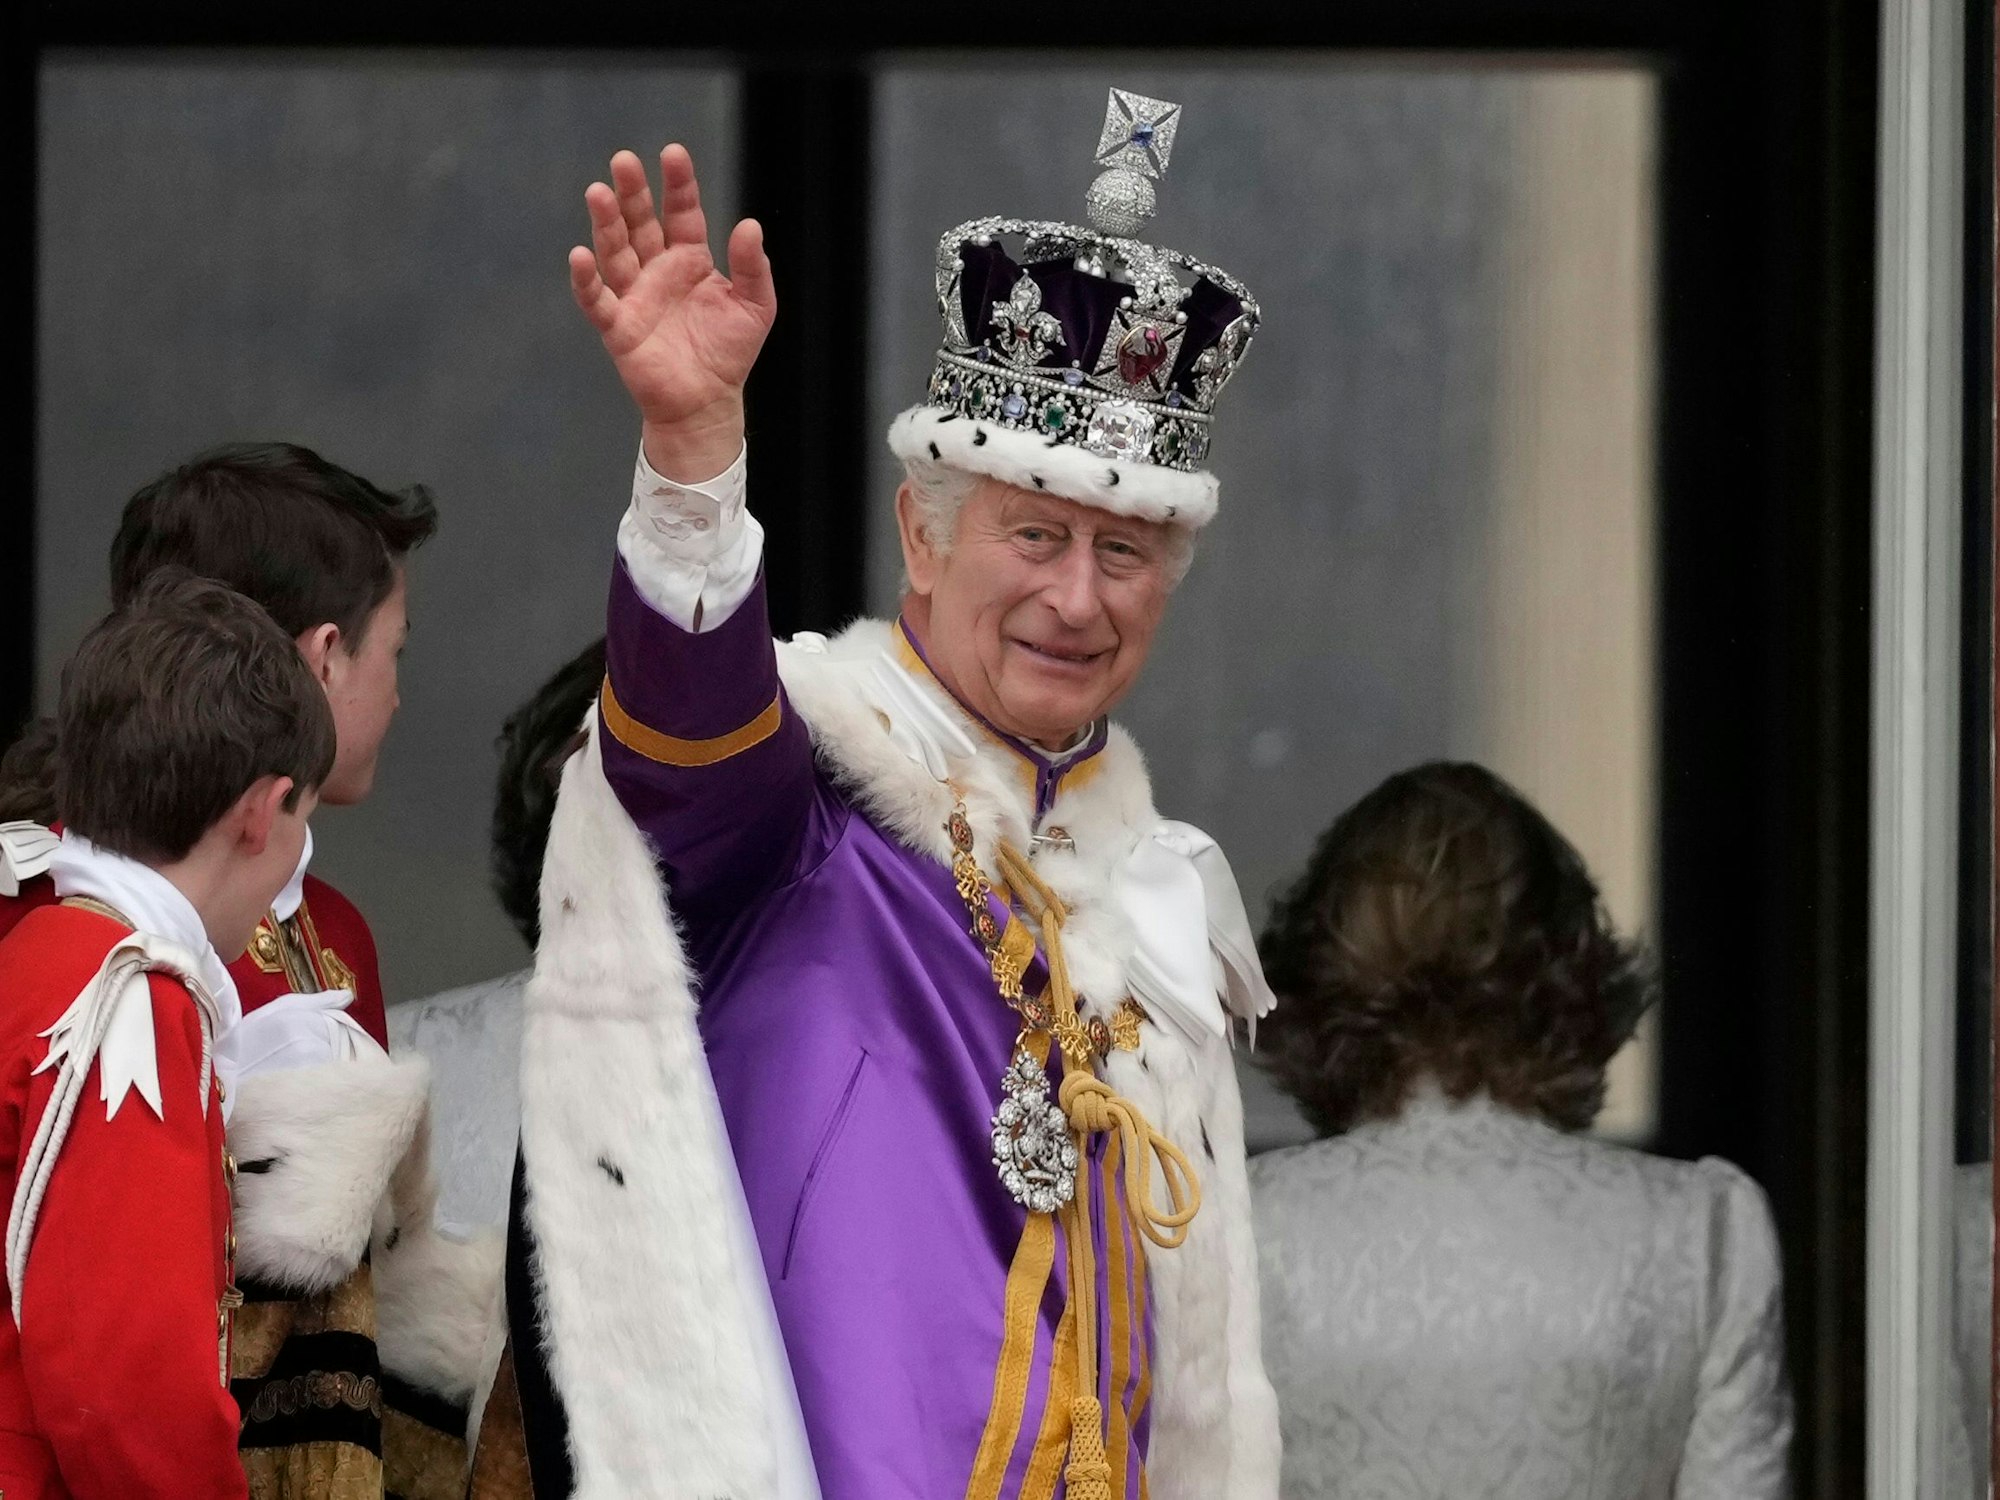 König Charles III. winkt vom Balkon des Buckingham Palastes während der Krönung von König Charles III. und Königin Camilla am 06. Mai 2023 in London, England.